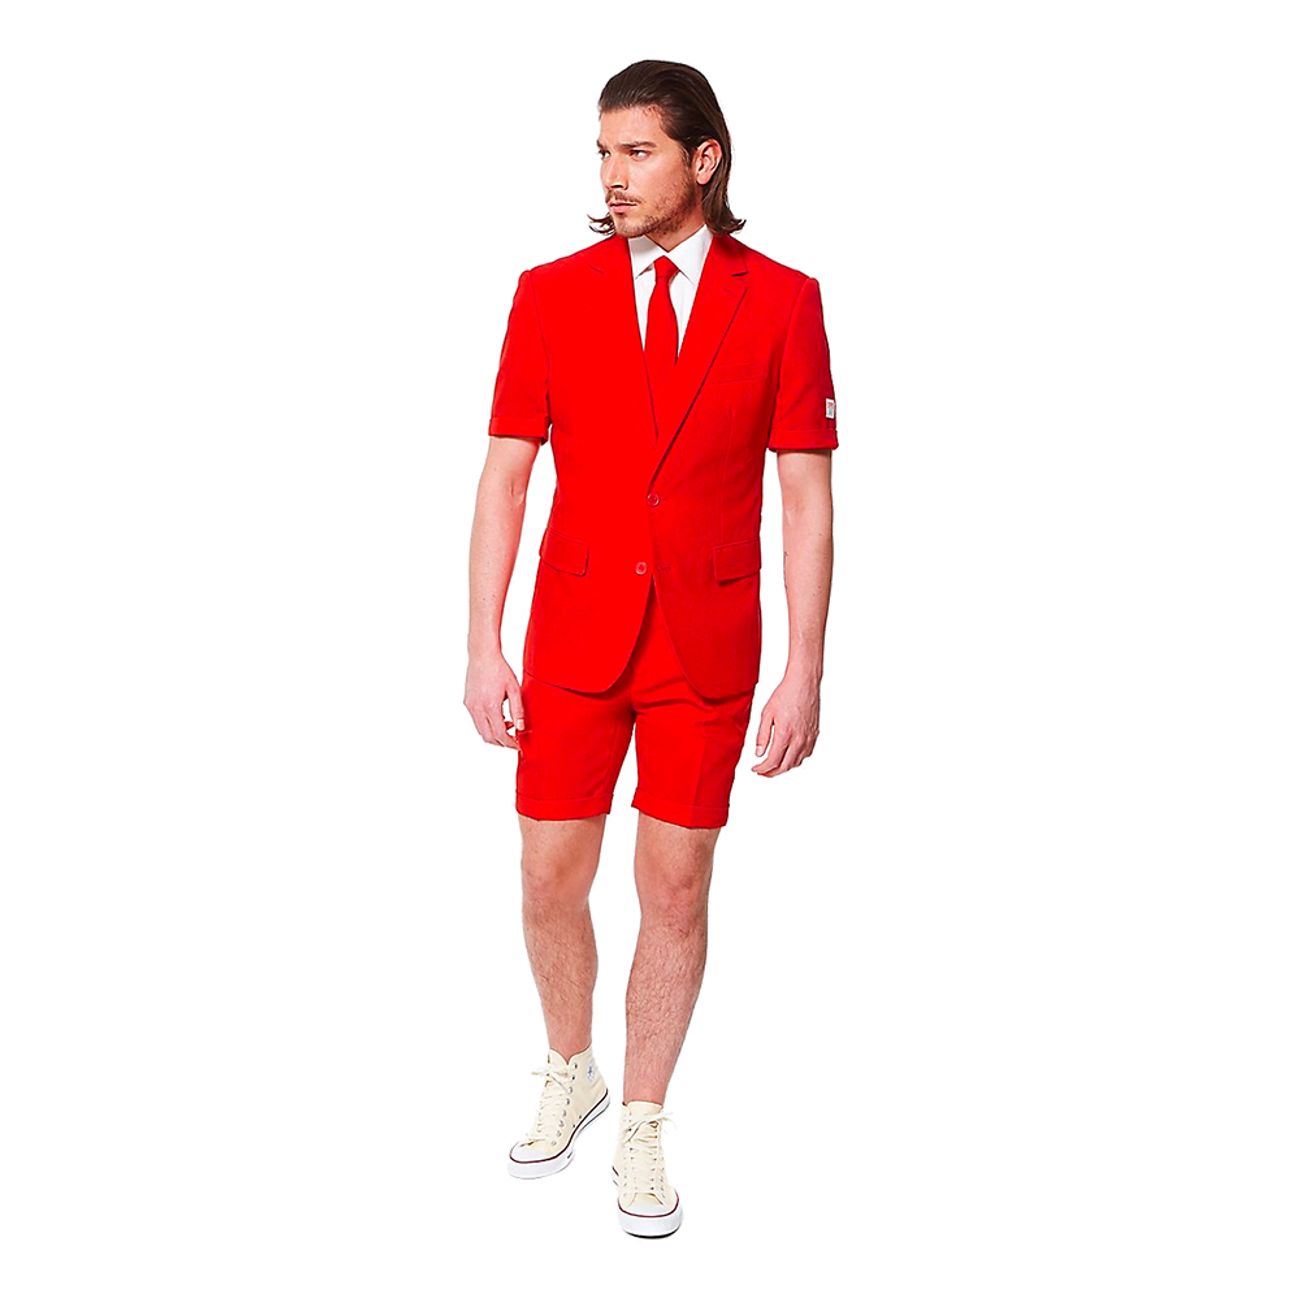 opposuits-red-devil-shorts-kostym-74447-1